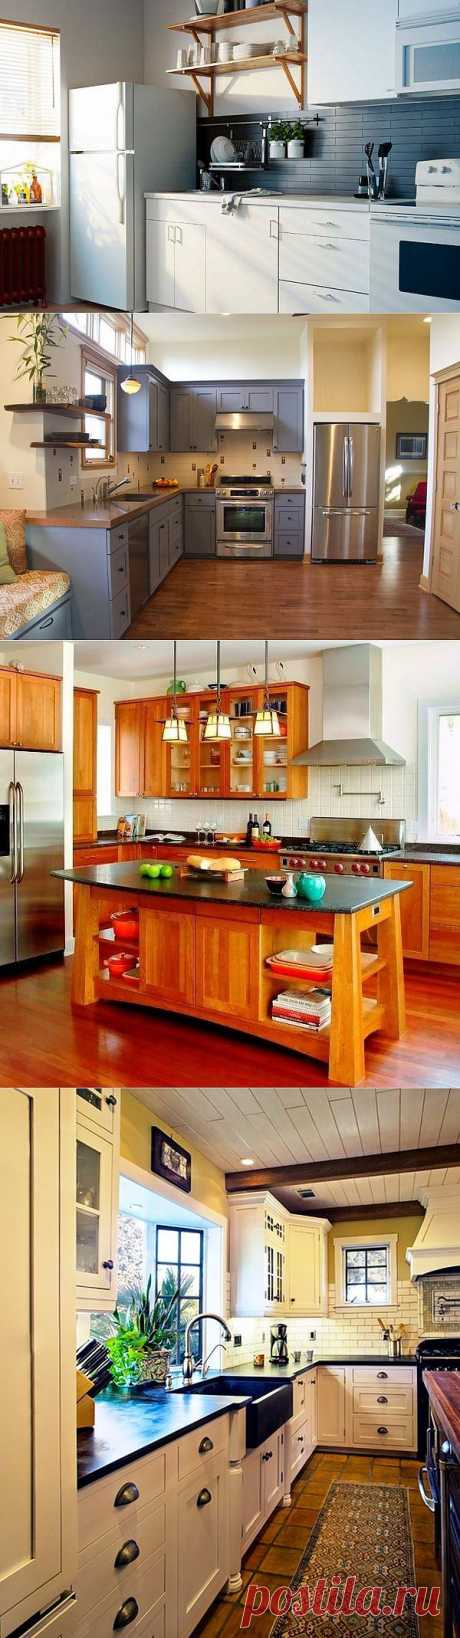 Как расставить мебель и технику на кухне: кухонная геометрия | Дом Мечты